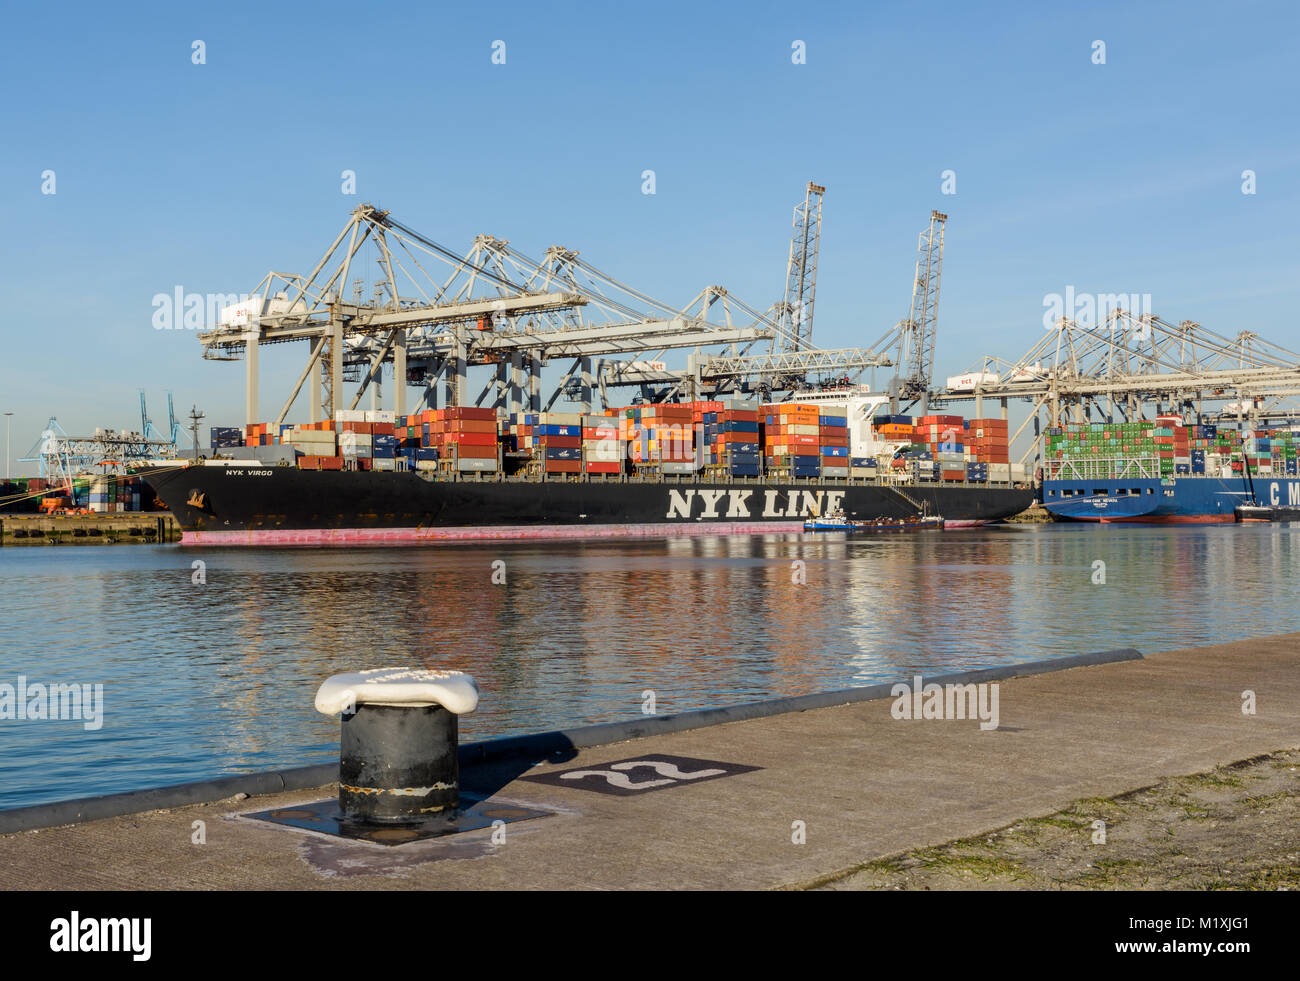 ROTTERDAM, Pays-Bas - 16 février 2016 : Le porte-conteneurs NYK VIRGO du NYK Line est amarré au terminal ECT dans le port de Rotterdam, T Banque D'Images